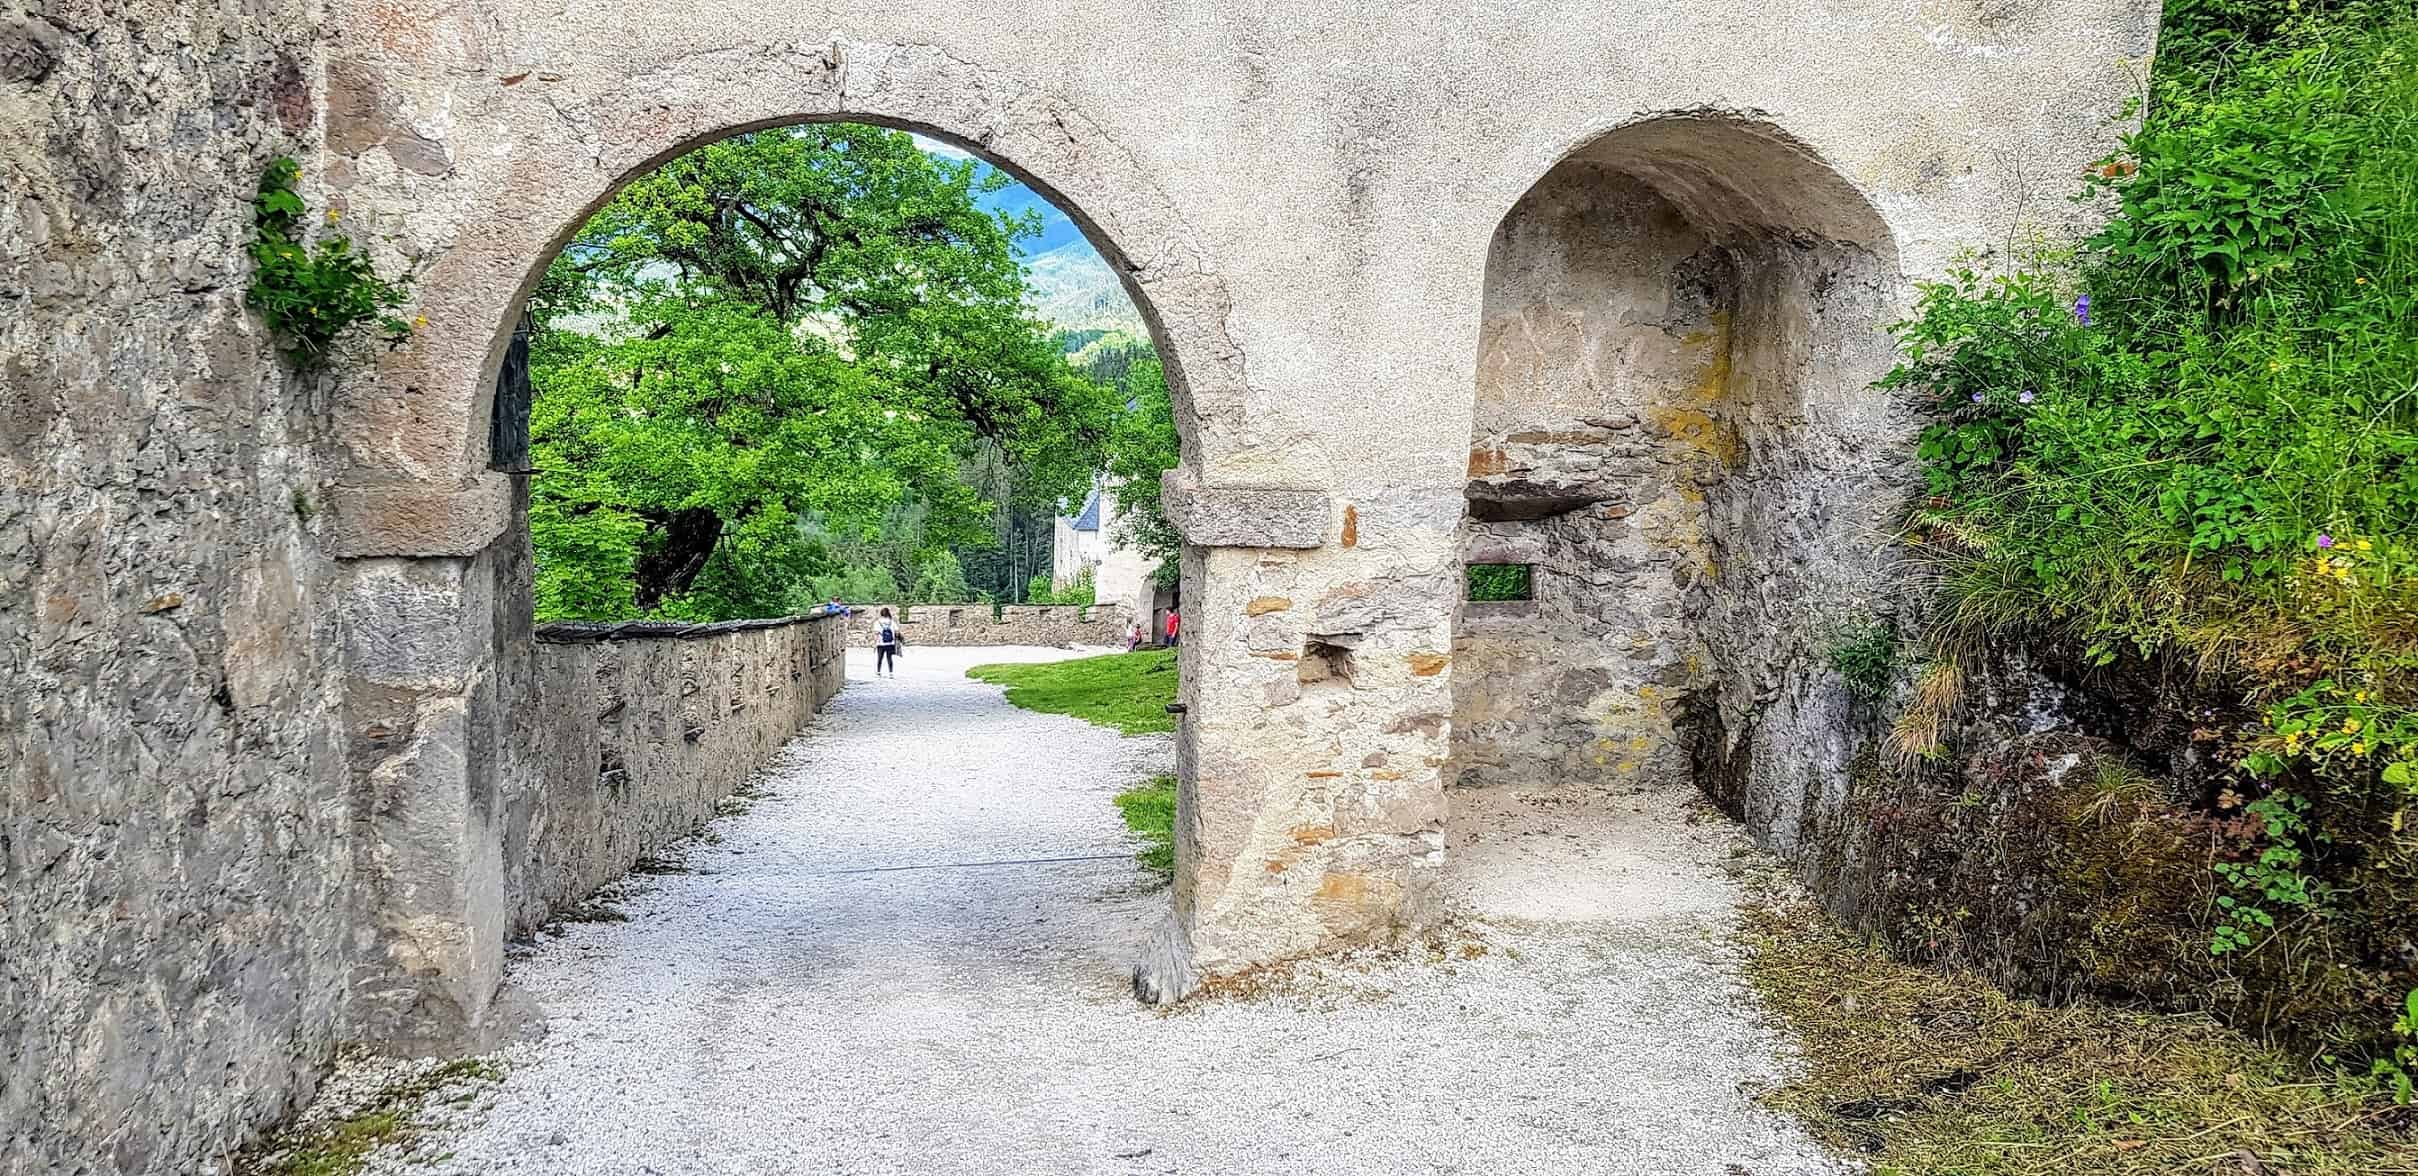 Manntor Rückseite - Mittelalter-Burgtor des Kärntner Ausflugsziels Hochosterwitz, Nähe Klagenfurt und St. Veit